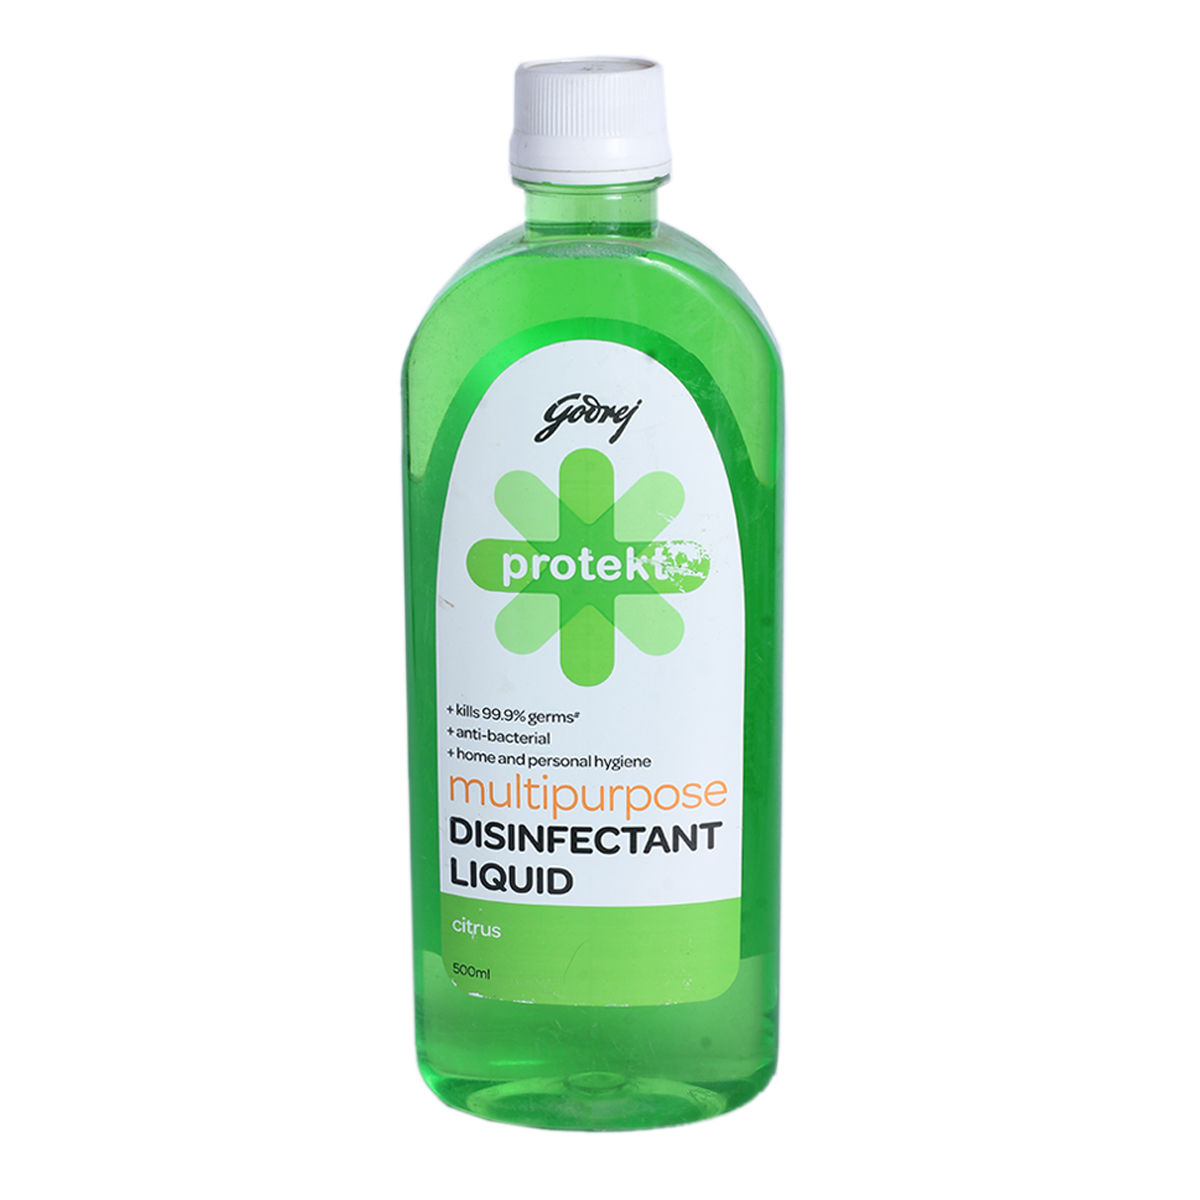 Godrej Protekt Multi Purpose Disinfectant Citrus Liquid, 500 ml, Pack of 1 